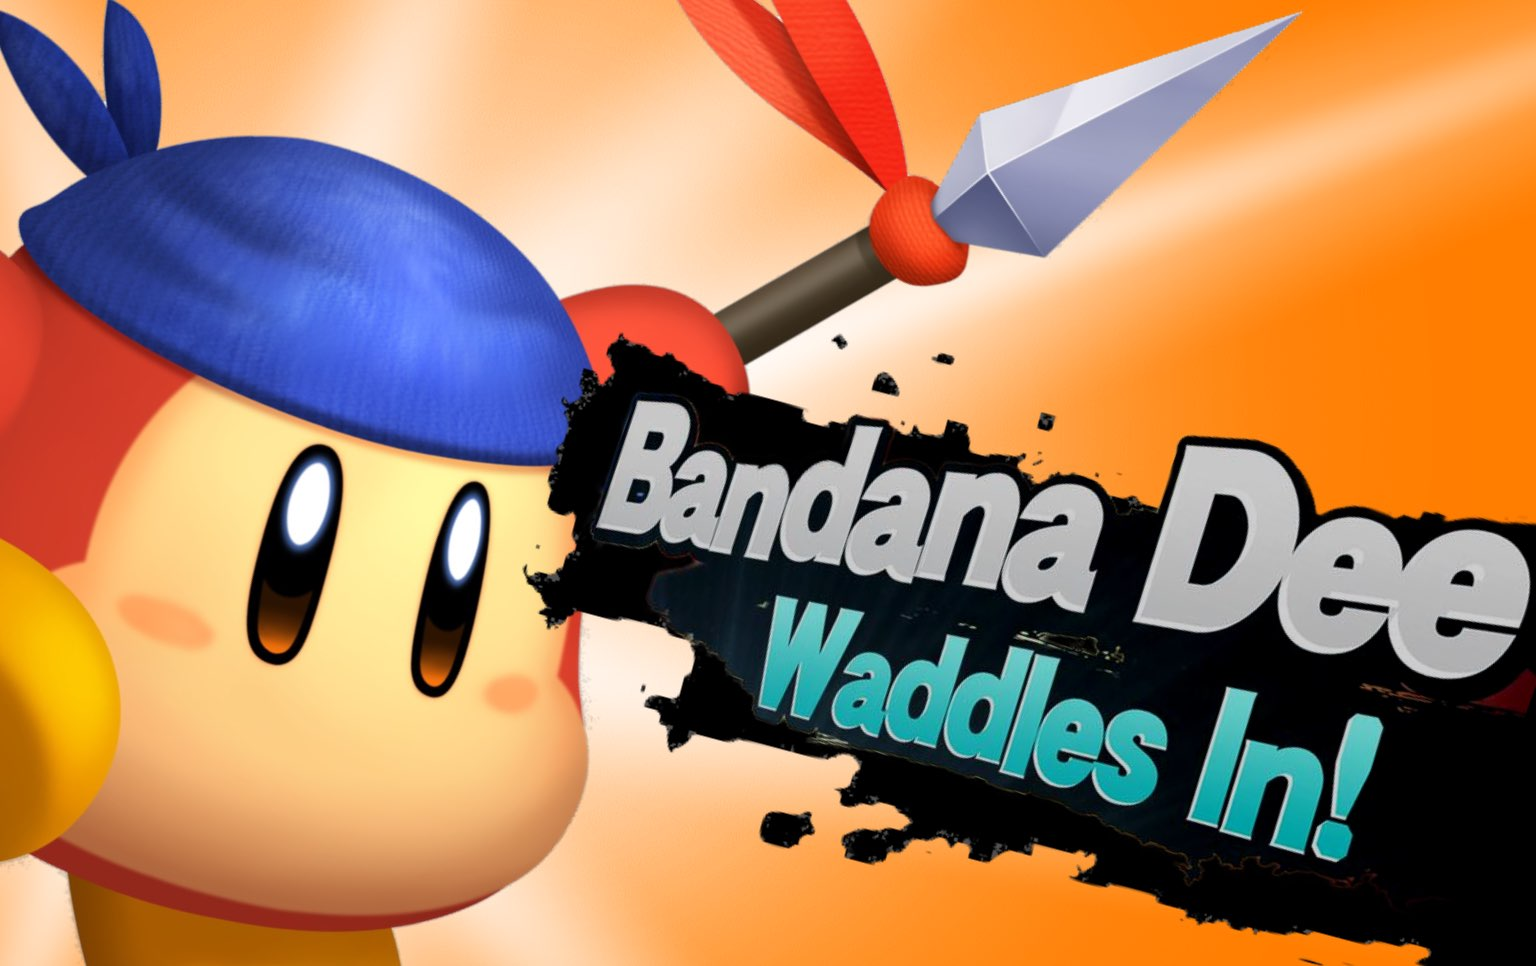 Bandana Dee als DLC-vechter voor Super Smash Bros. Ultimate?